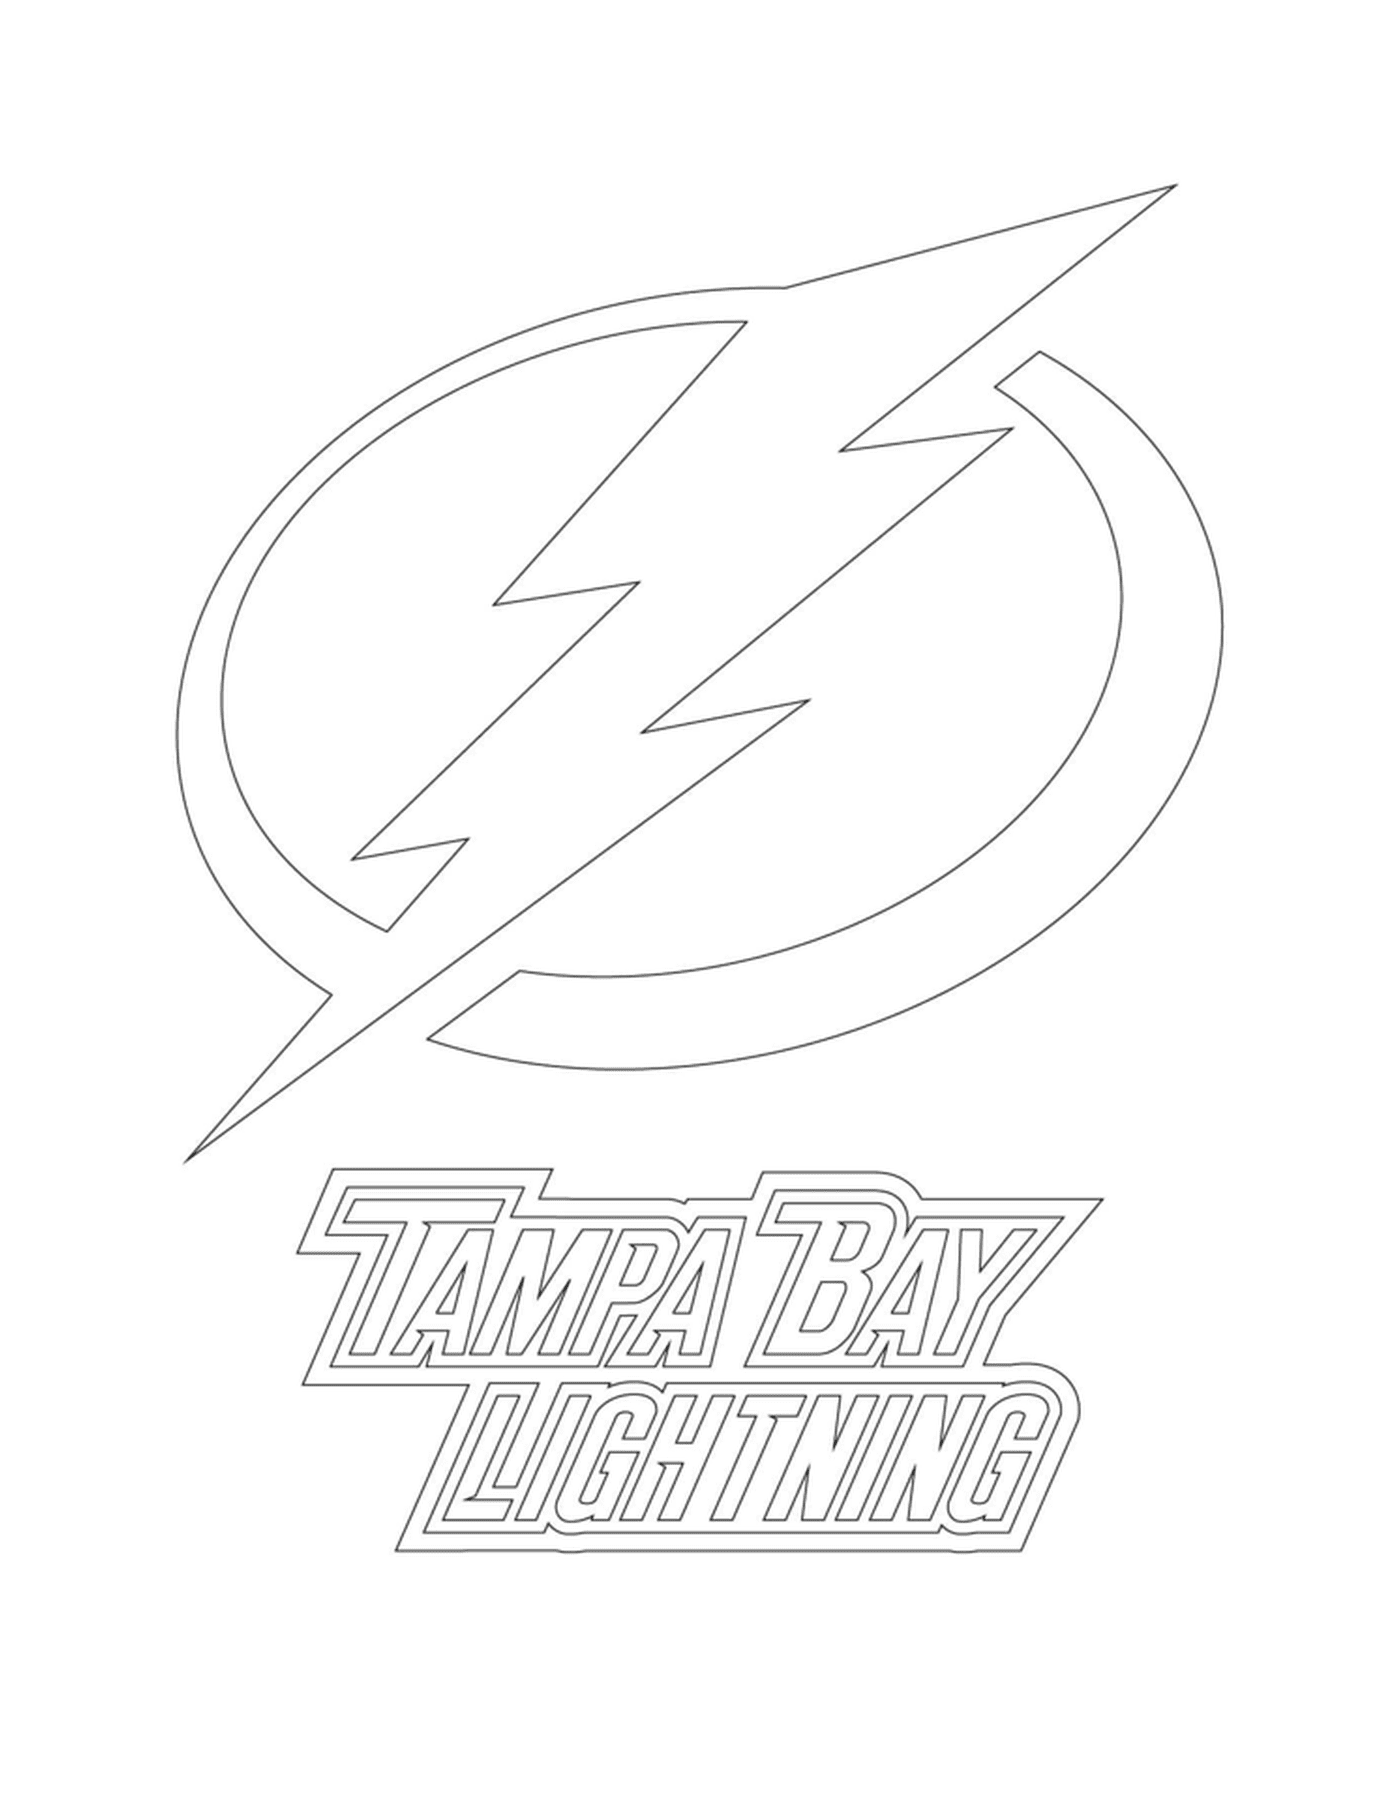 tampa bay lightning logo lnh nhl hockey sport